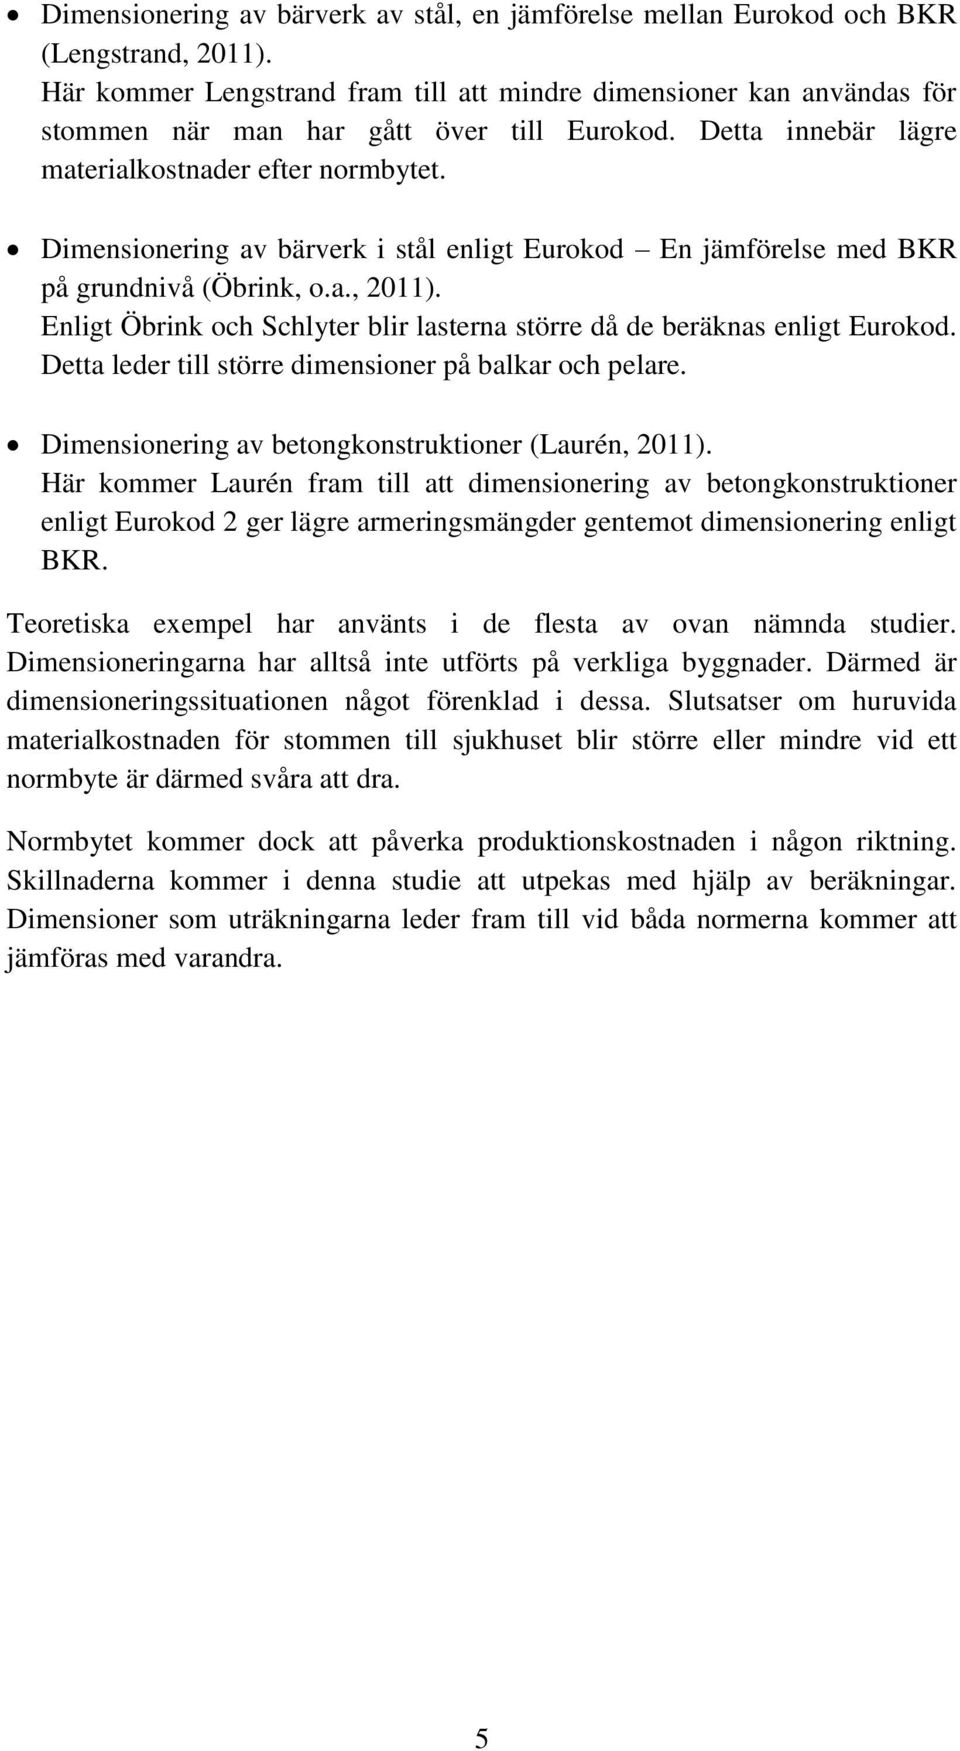 Dimensionering av bärverk i stål enligt Eurokod En jämförelse med BKR på grundnivå (Öbrink, o.a., 2011). Enligt Öbrink och Schlyter blir lasterna större då de beräknas enligt Eurokod.